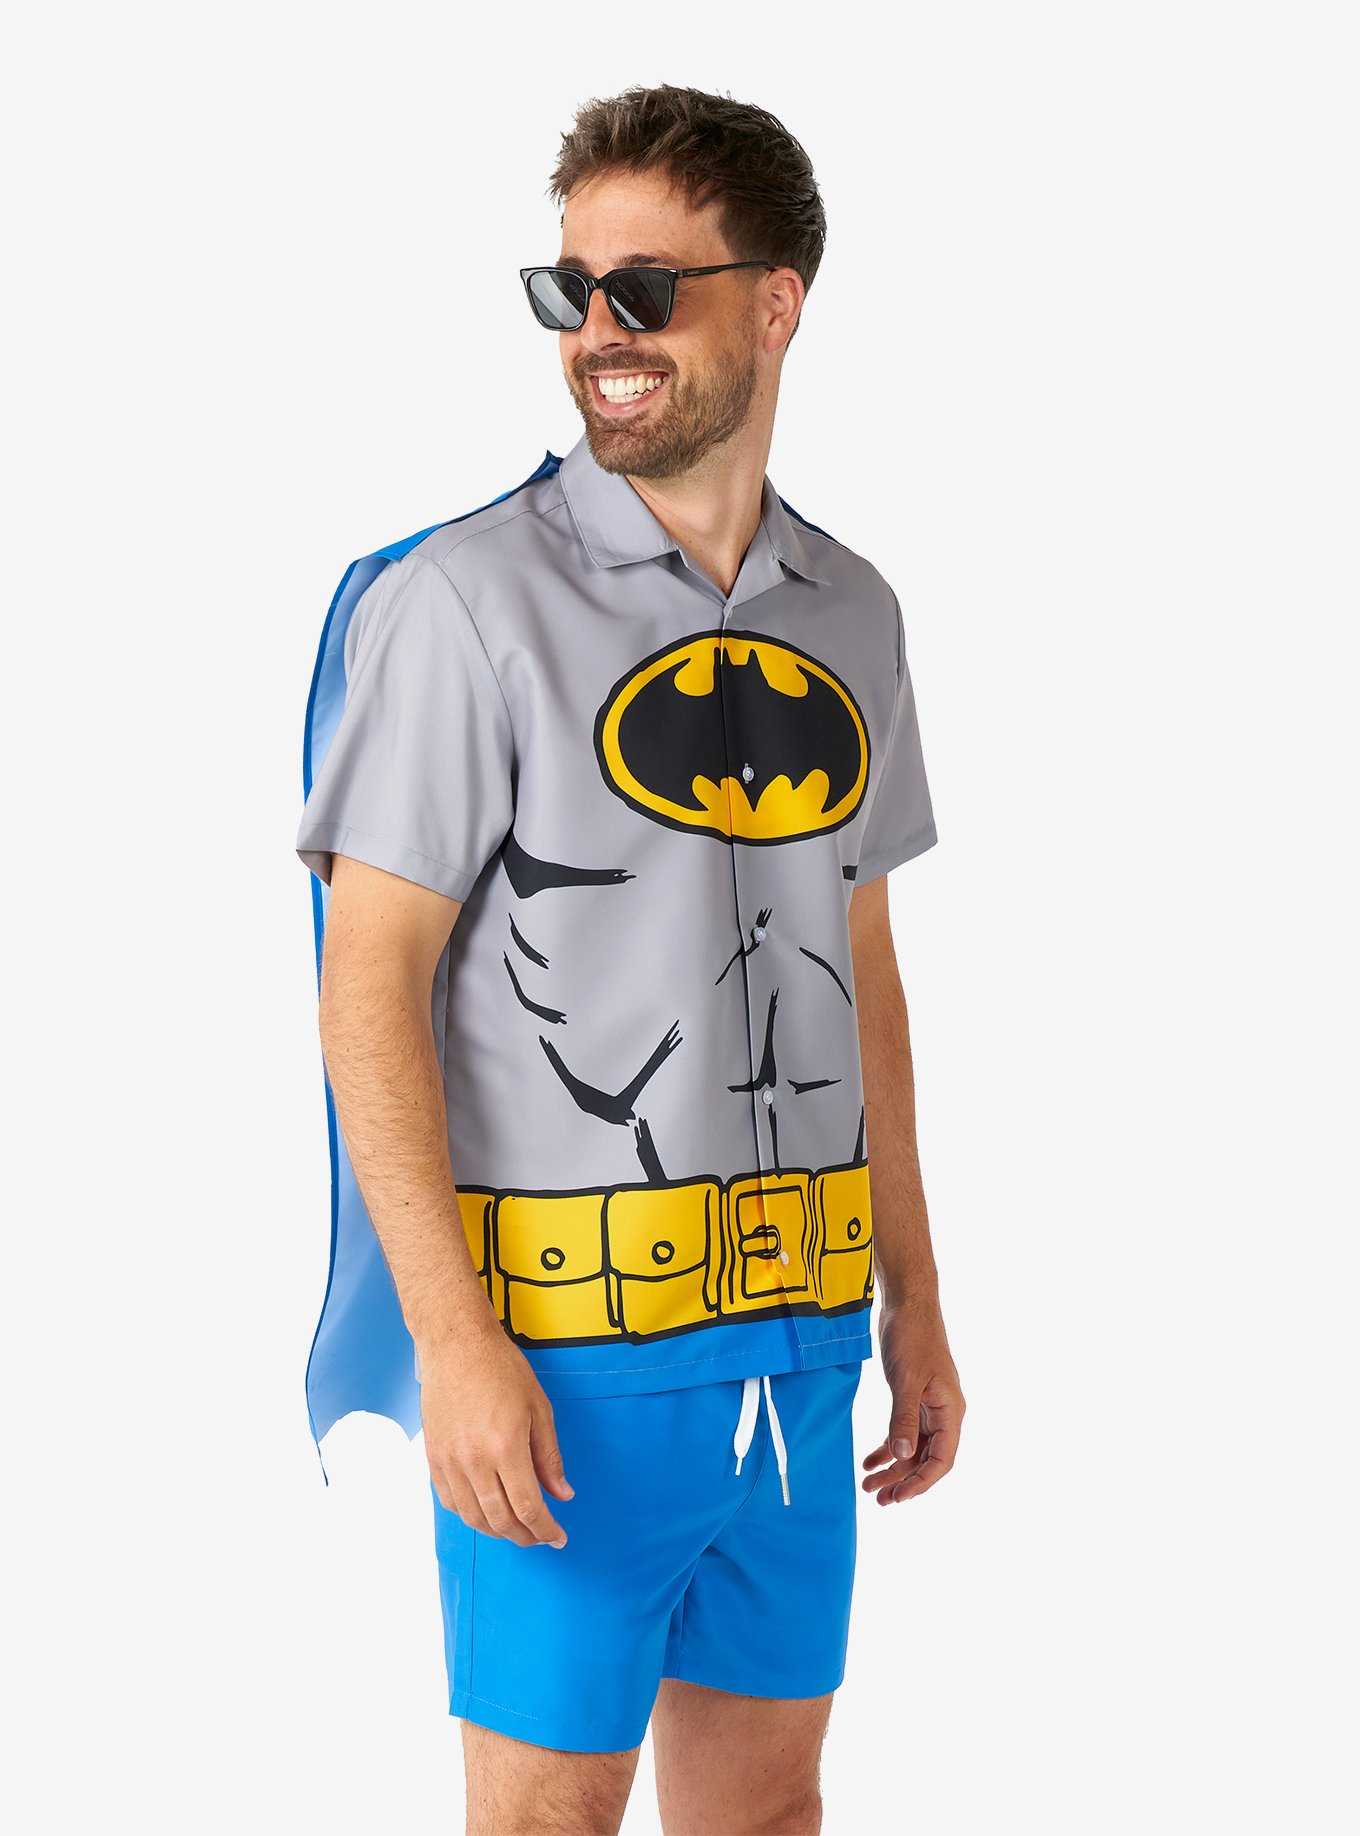 DC Comics Batman Button-Up Shirt and Short, , hi-res